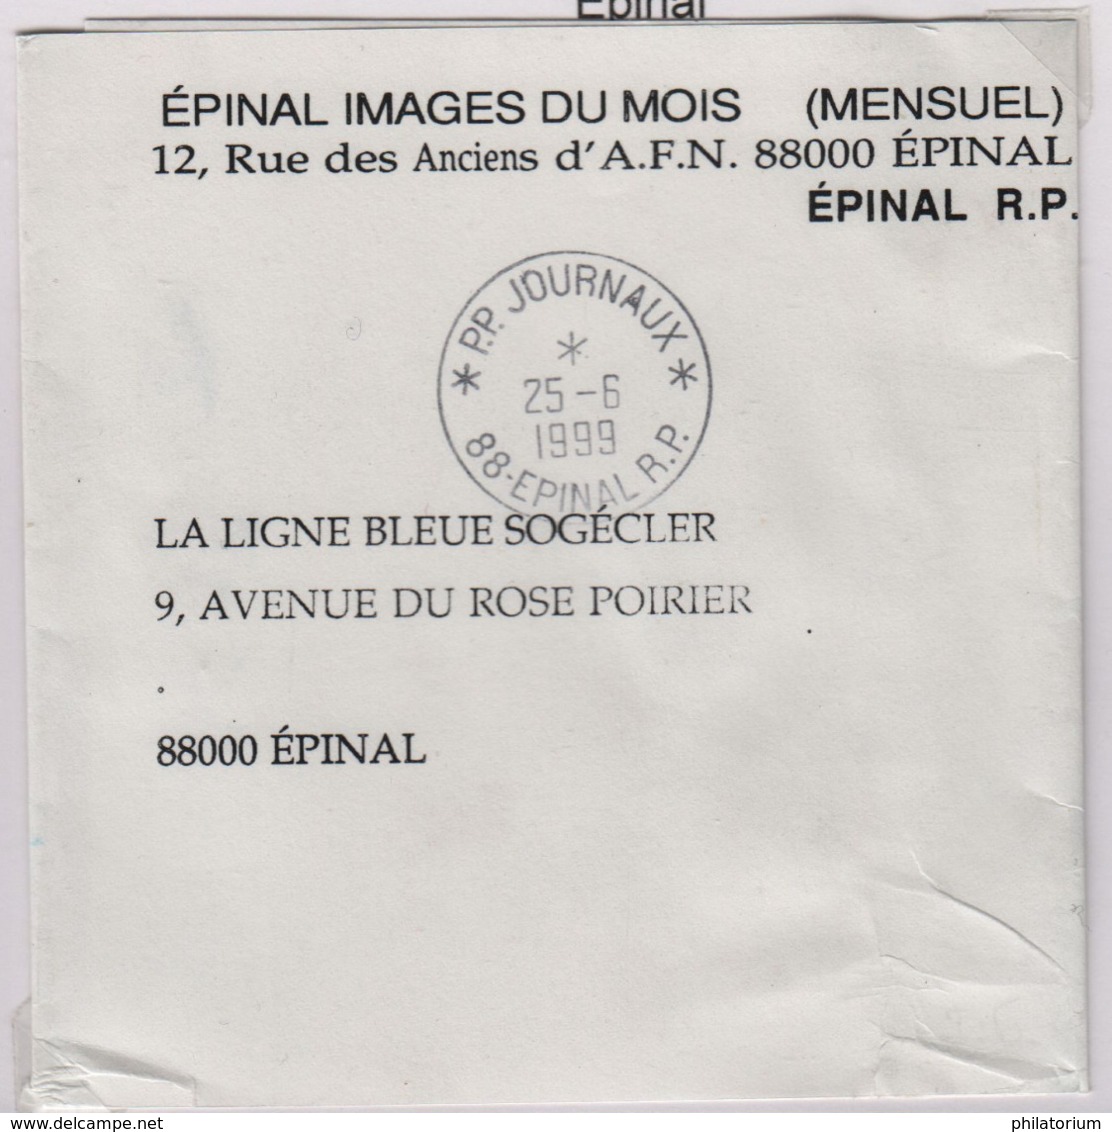 EPINAL (Vosges)  R.P. PP.JOURNAUX  25 6 1999 - Cachets Manuels